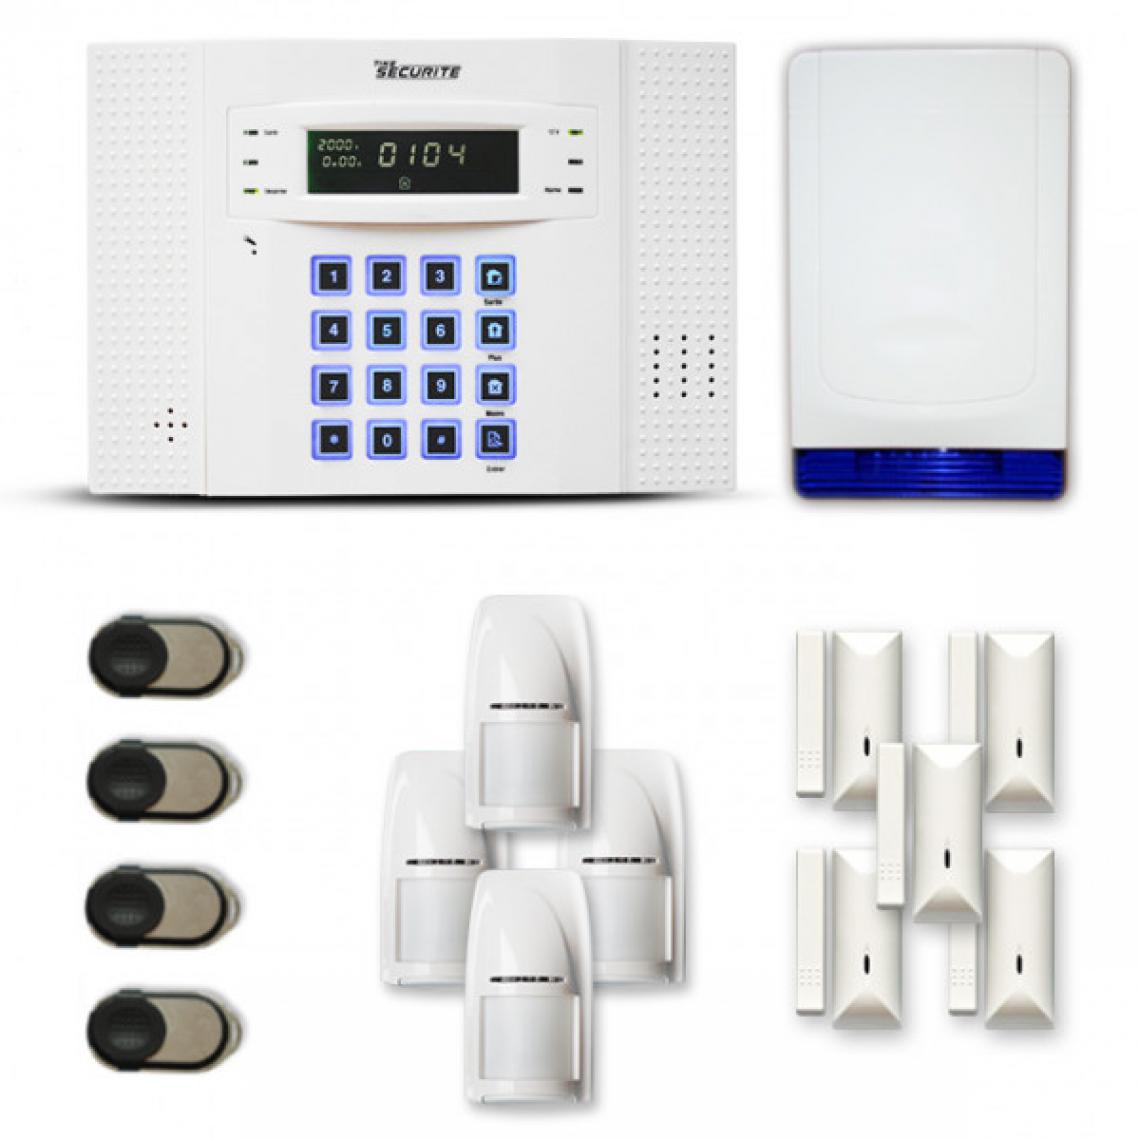 Tike Securite - Alarme maison sans fil DNB34 Compatible Box internet et GSM - Alarme connectée